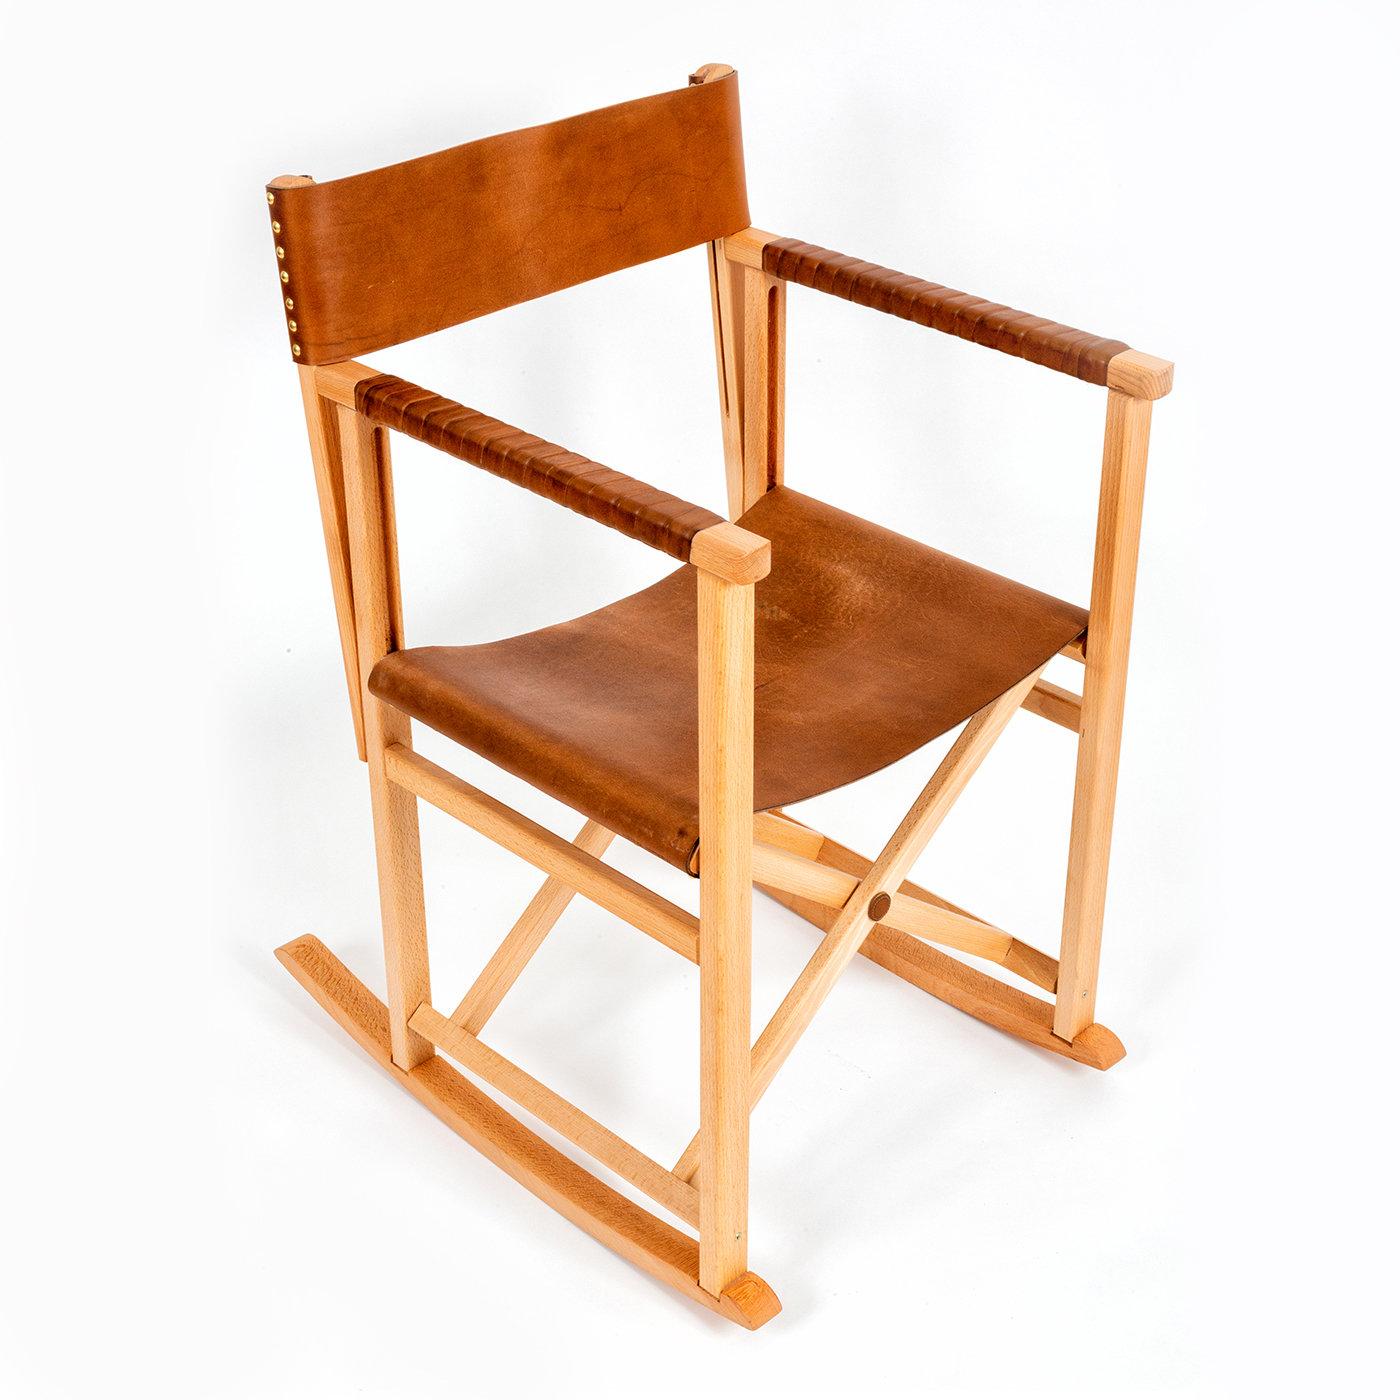 Exemple magistral de design élégant et polyvalent, ce fauteuil à bascule présente une structure robuste en bois de chêne avec un dossier et une assise (H 48 cm) en cuir précieux, qui recouvre également les accoudoirs linéaires pour offrir un confort